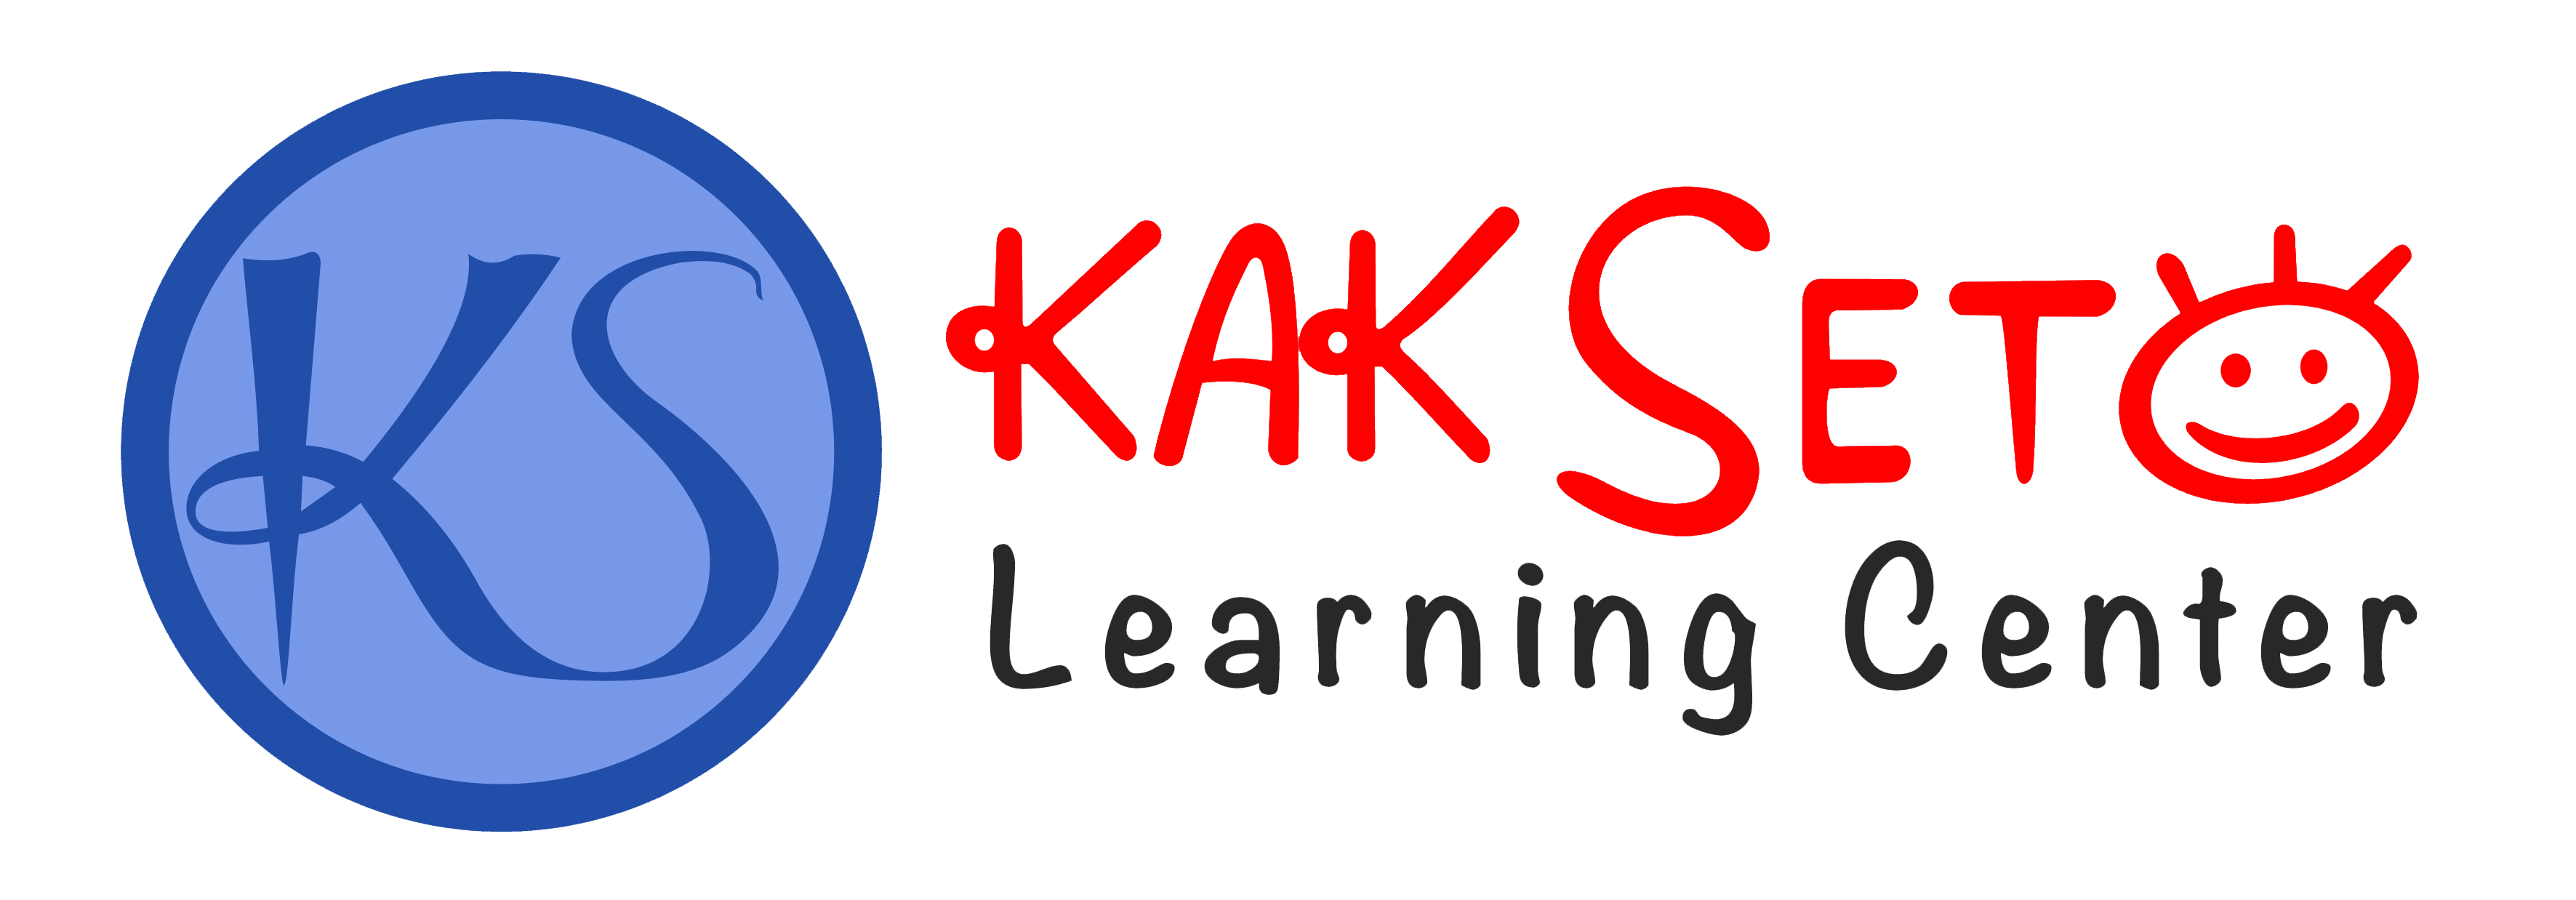 Kak Seto Learning Center (KSLC)